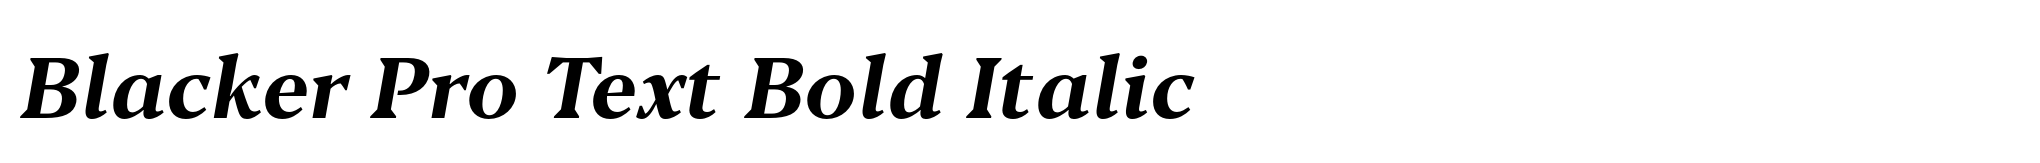 Blacker Pro Text Bold Italic image